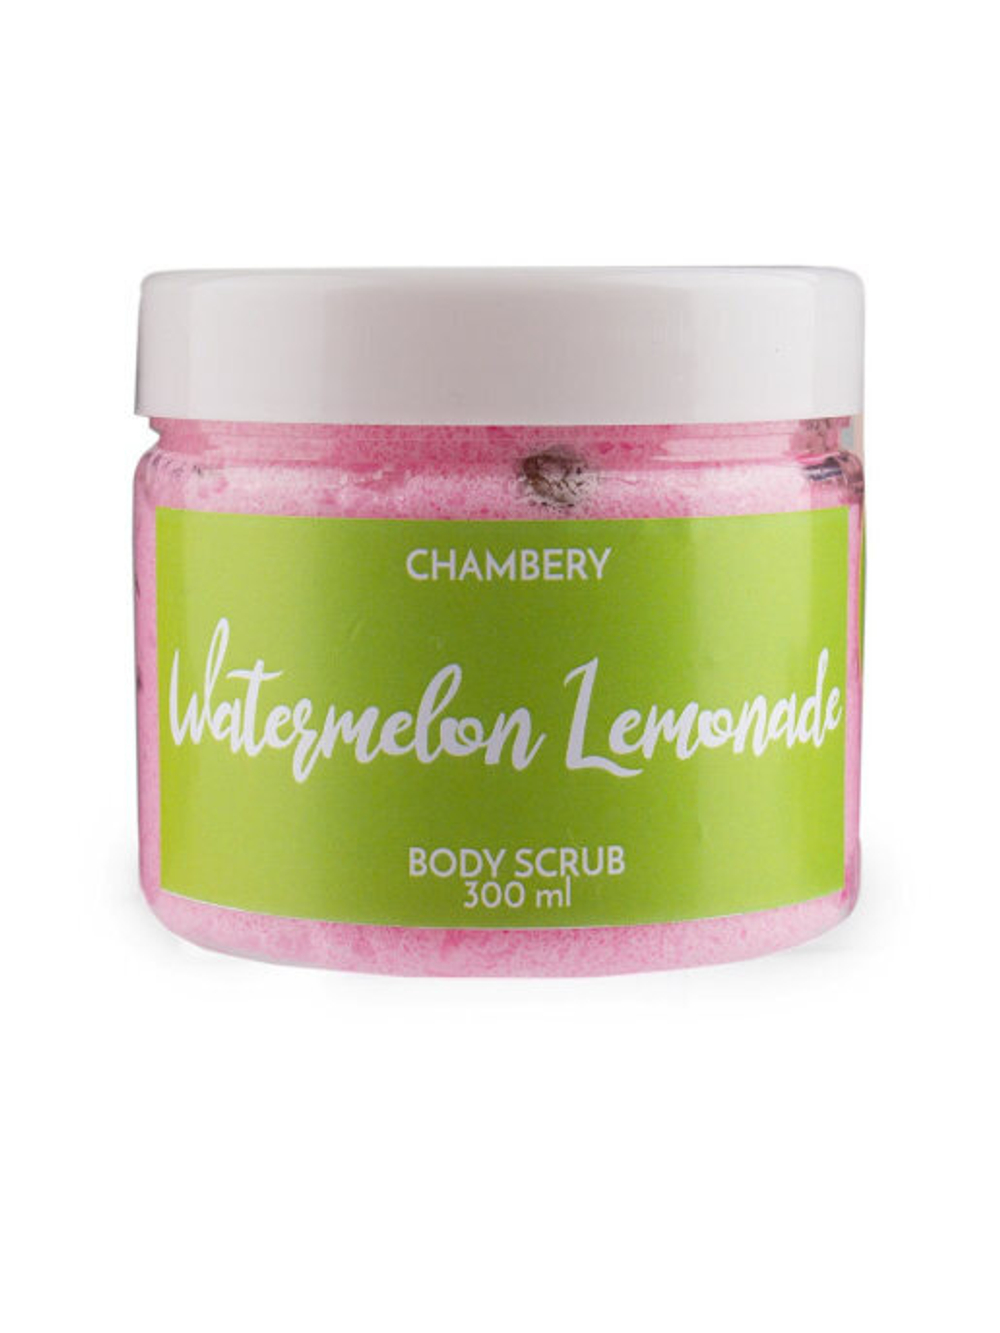 Скраб для тела CHAMBERY "Watermelon Lemonade" с ароматом сочного сладкого арбуза 300 мл.